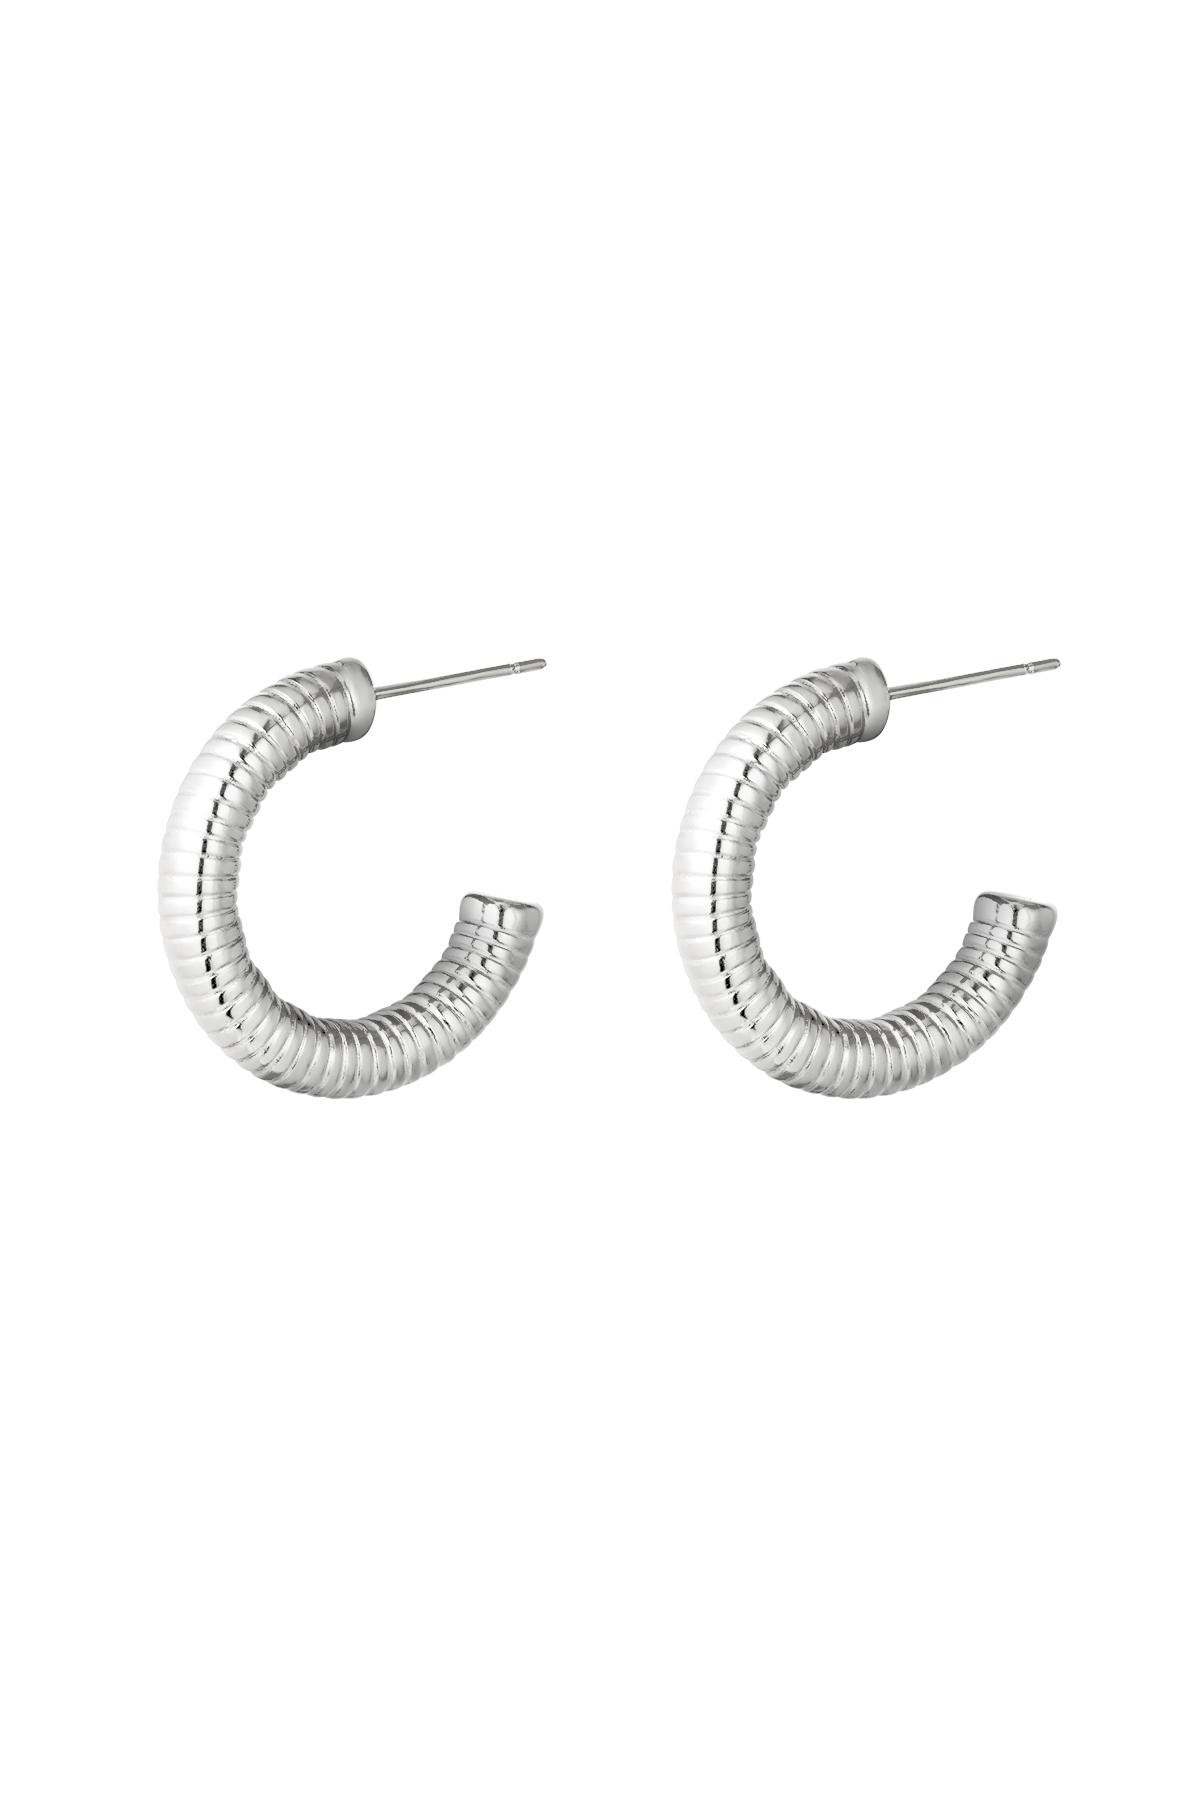 Silver / Earrings Hoops Spring Silver Stainless Steel 